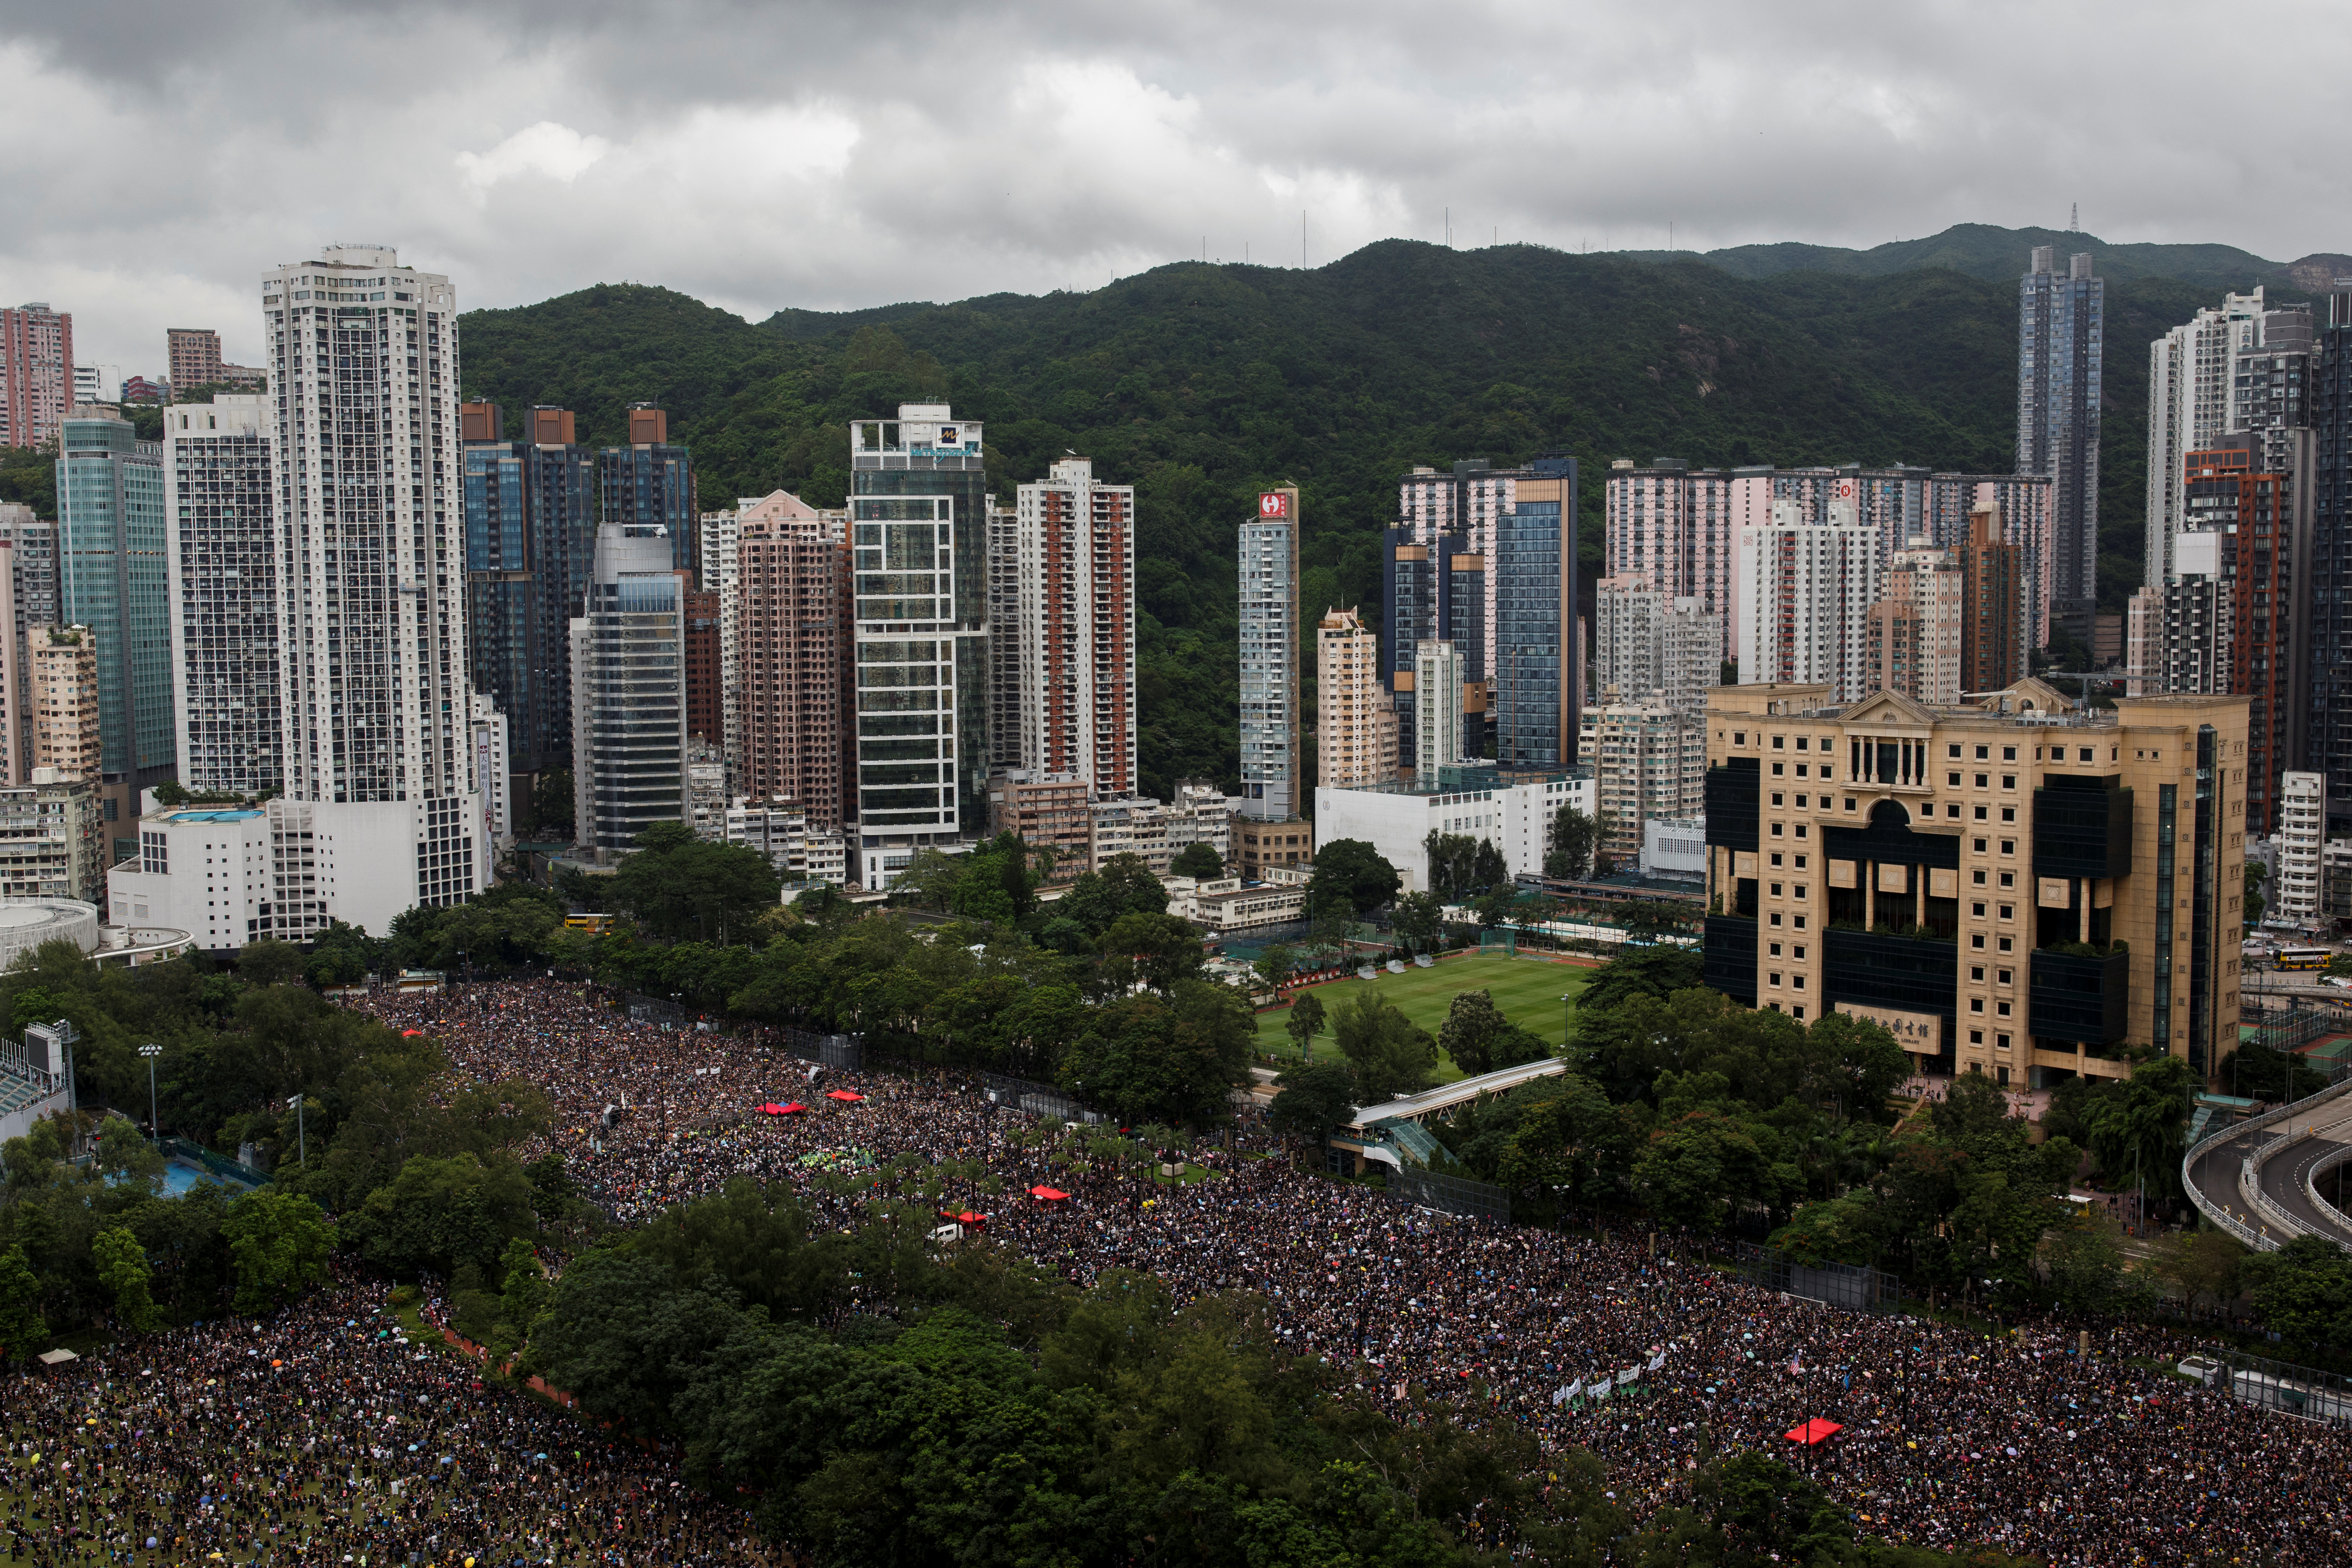 Miles de manifestantes vuelven a las calles de Hong Kong pese a amenazas de China (FOTOS)